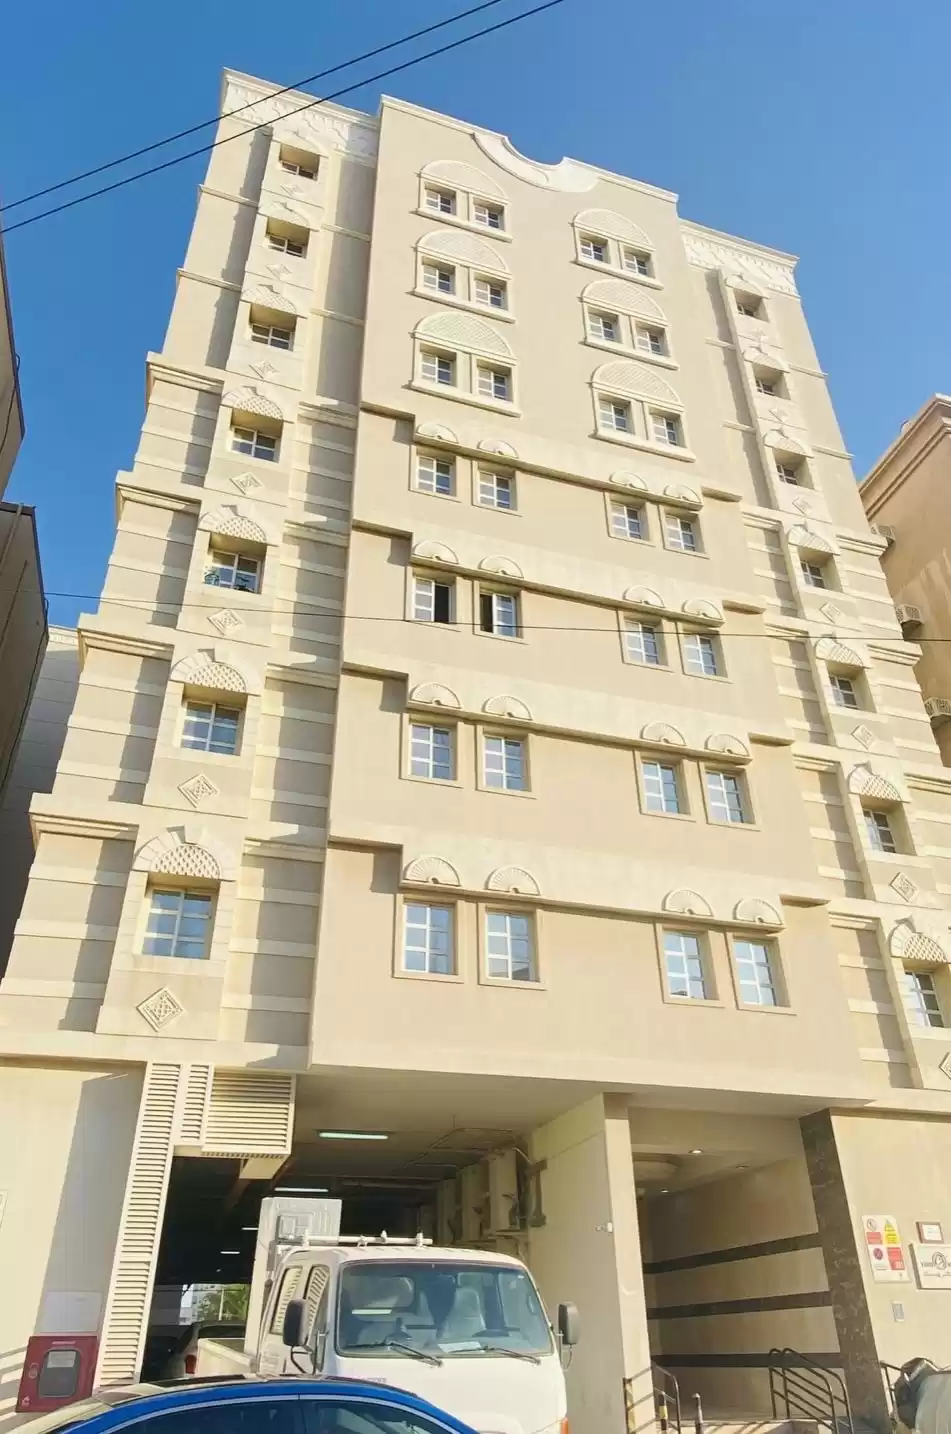 Résidentiel Propriété prête 3 chambres U / f Appartement  a louer au Al-Sadd , Doha #16218 - 1  image 